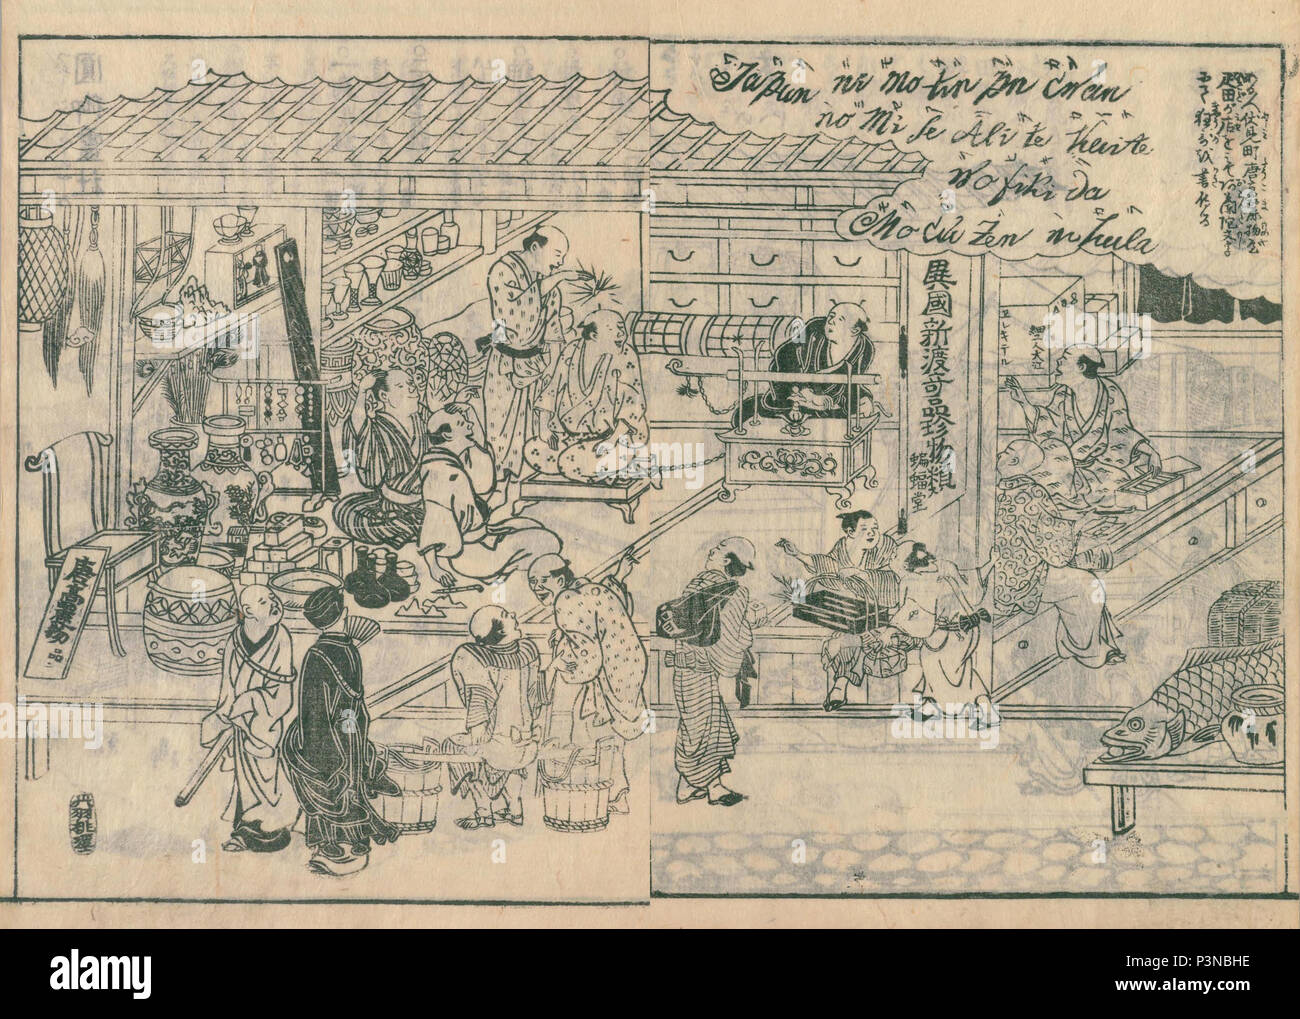 Scène d'Karamonoya de Settsu meisho zue,, publié en 1798, Collection privée. Elekiter est vu. Banque D'Images